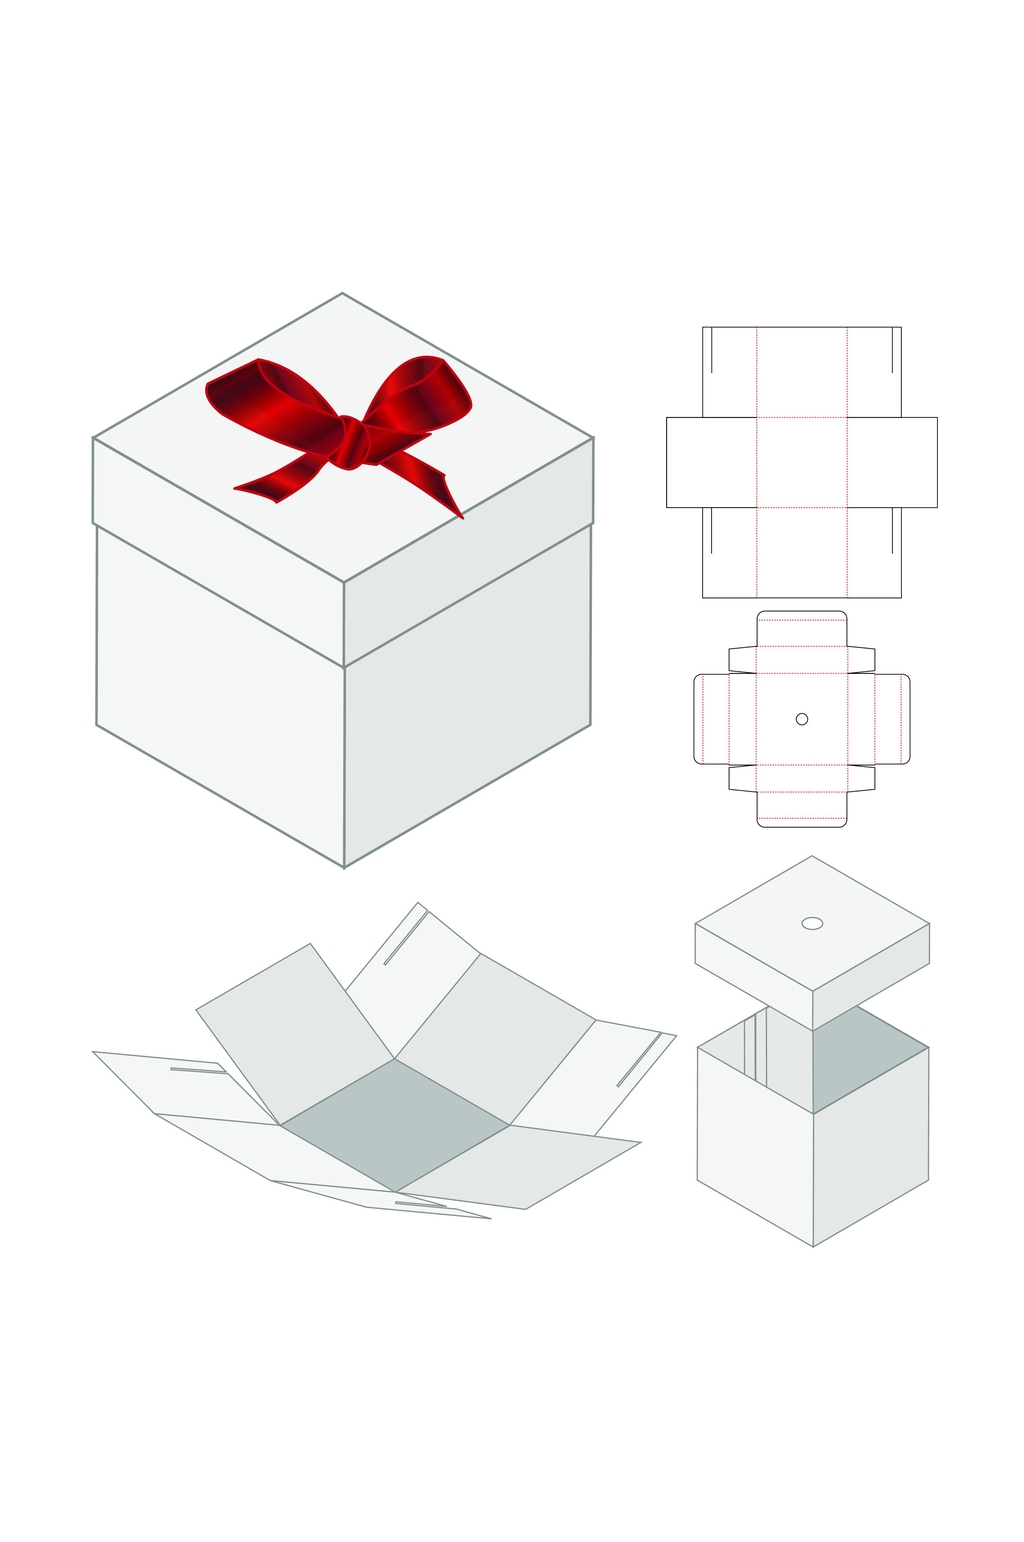 简约产品包装盒刀模展开图模板下载